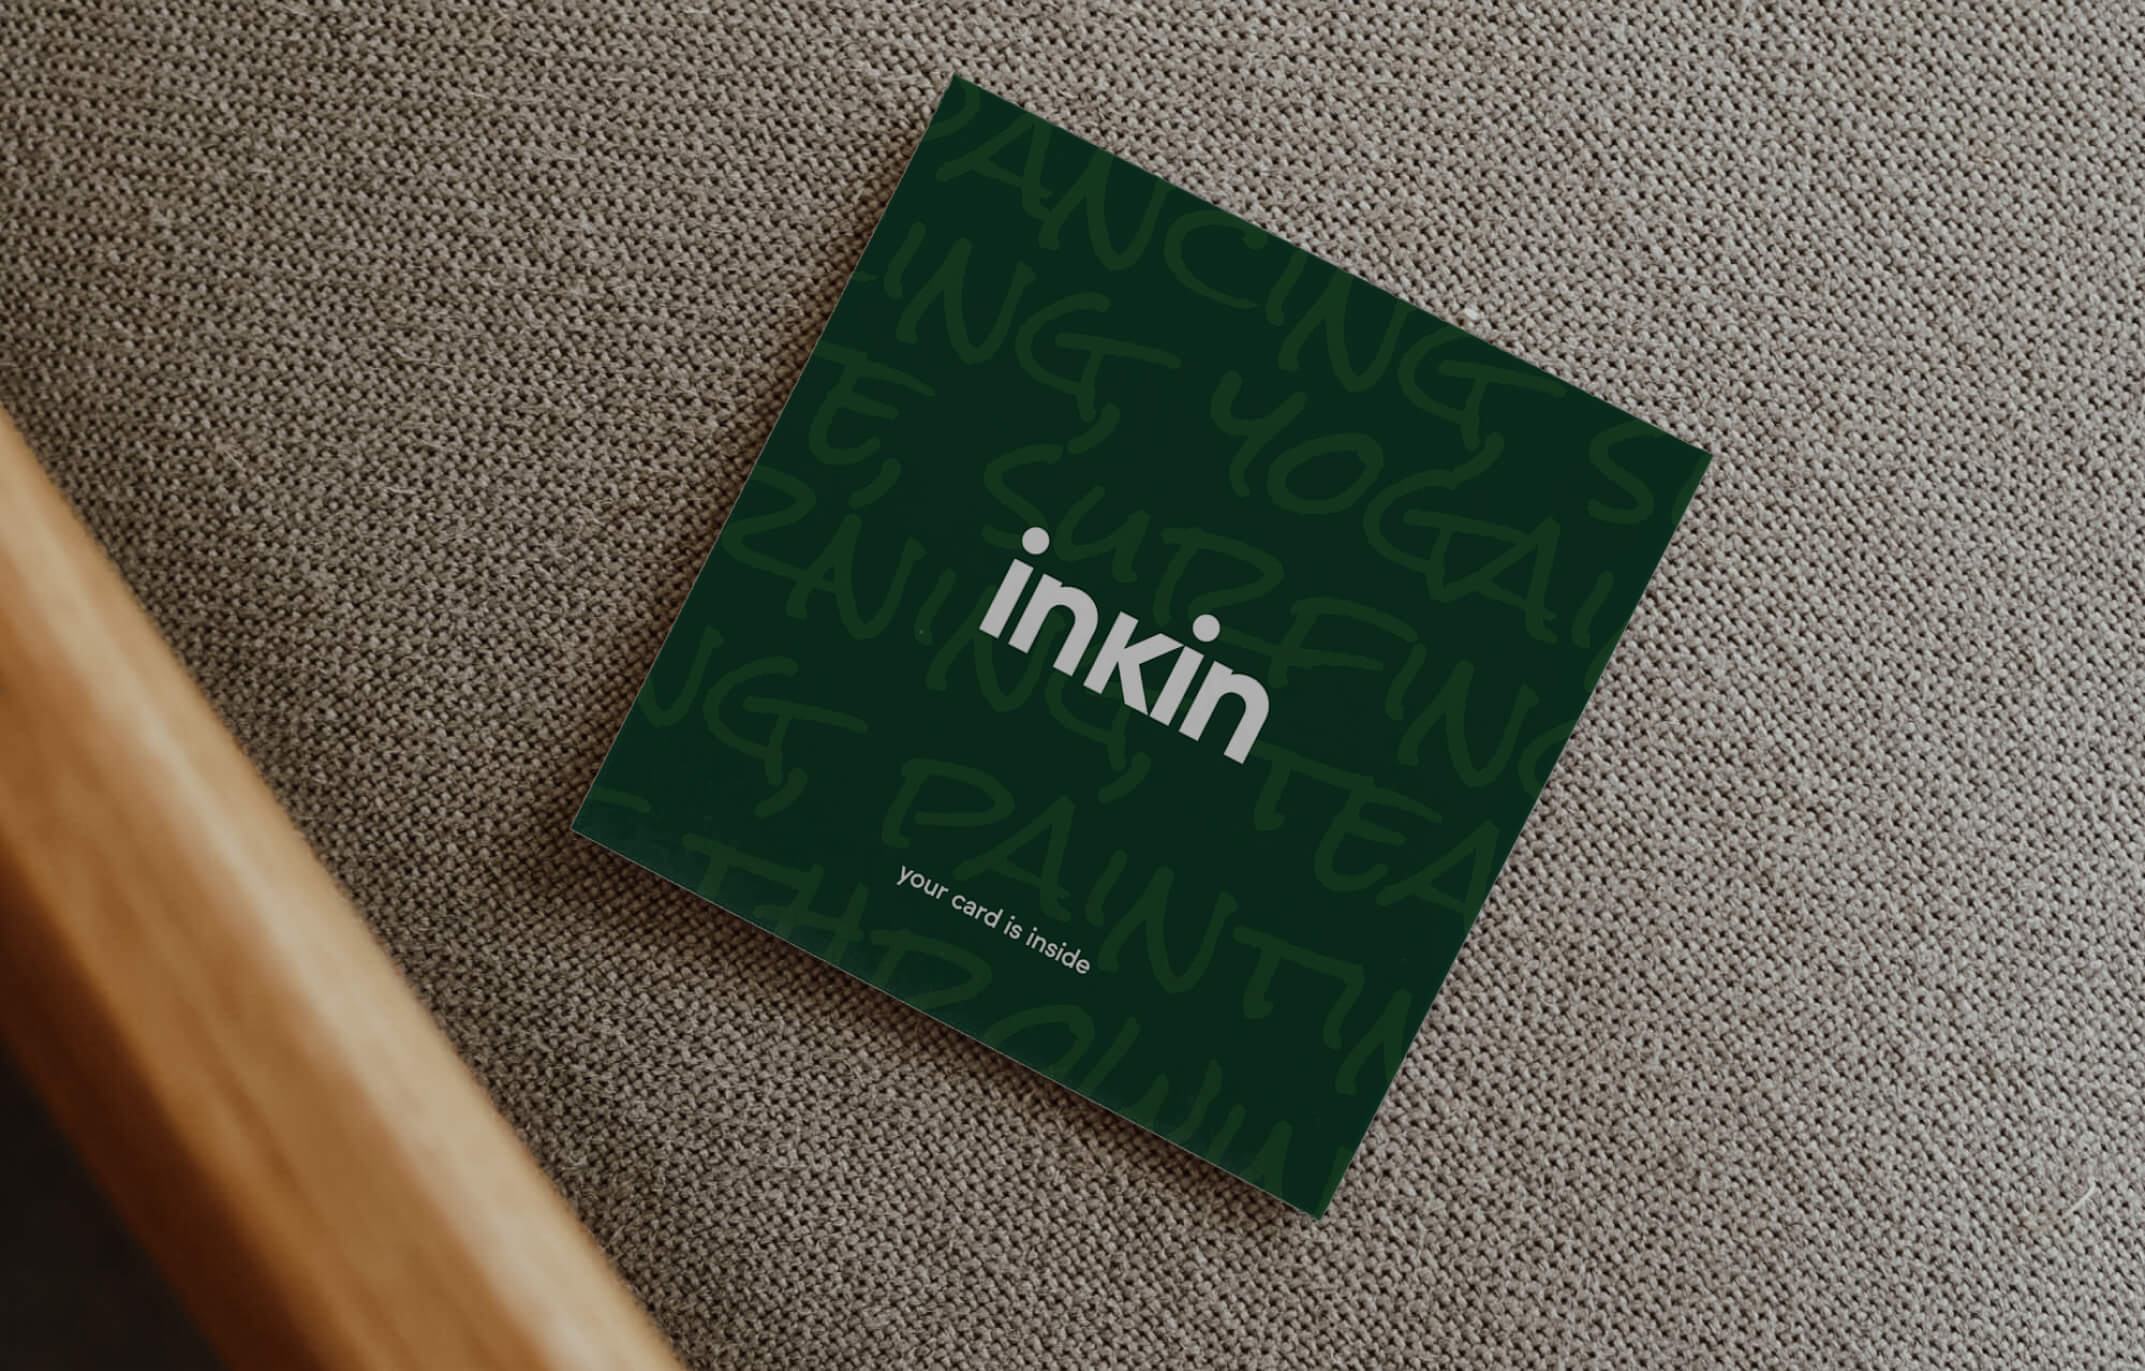 inKin logo on iphone screen